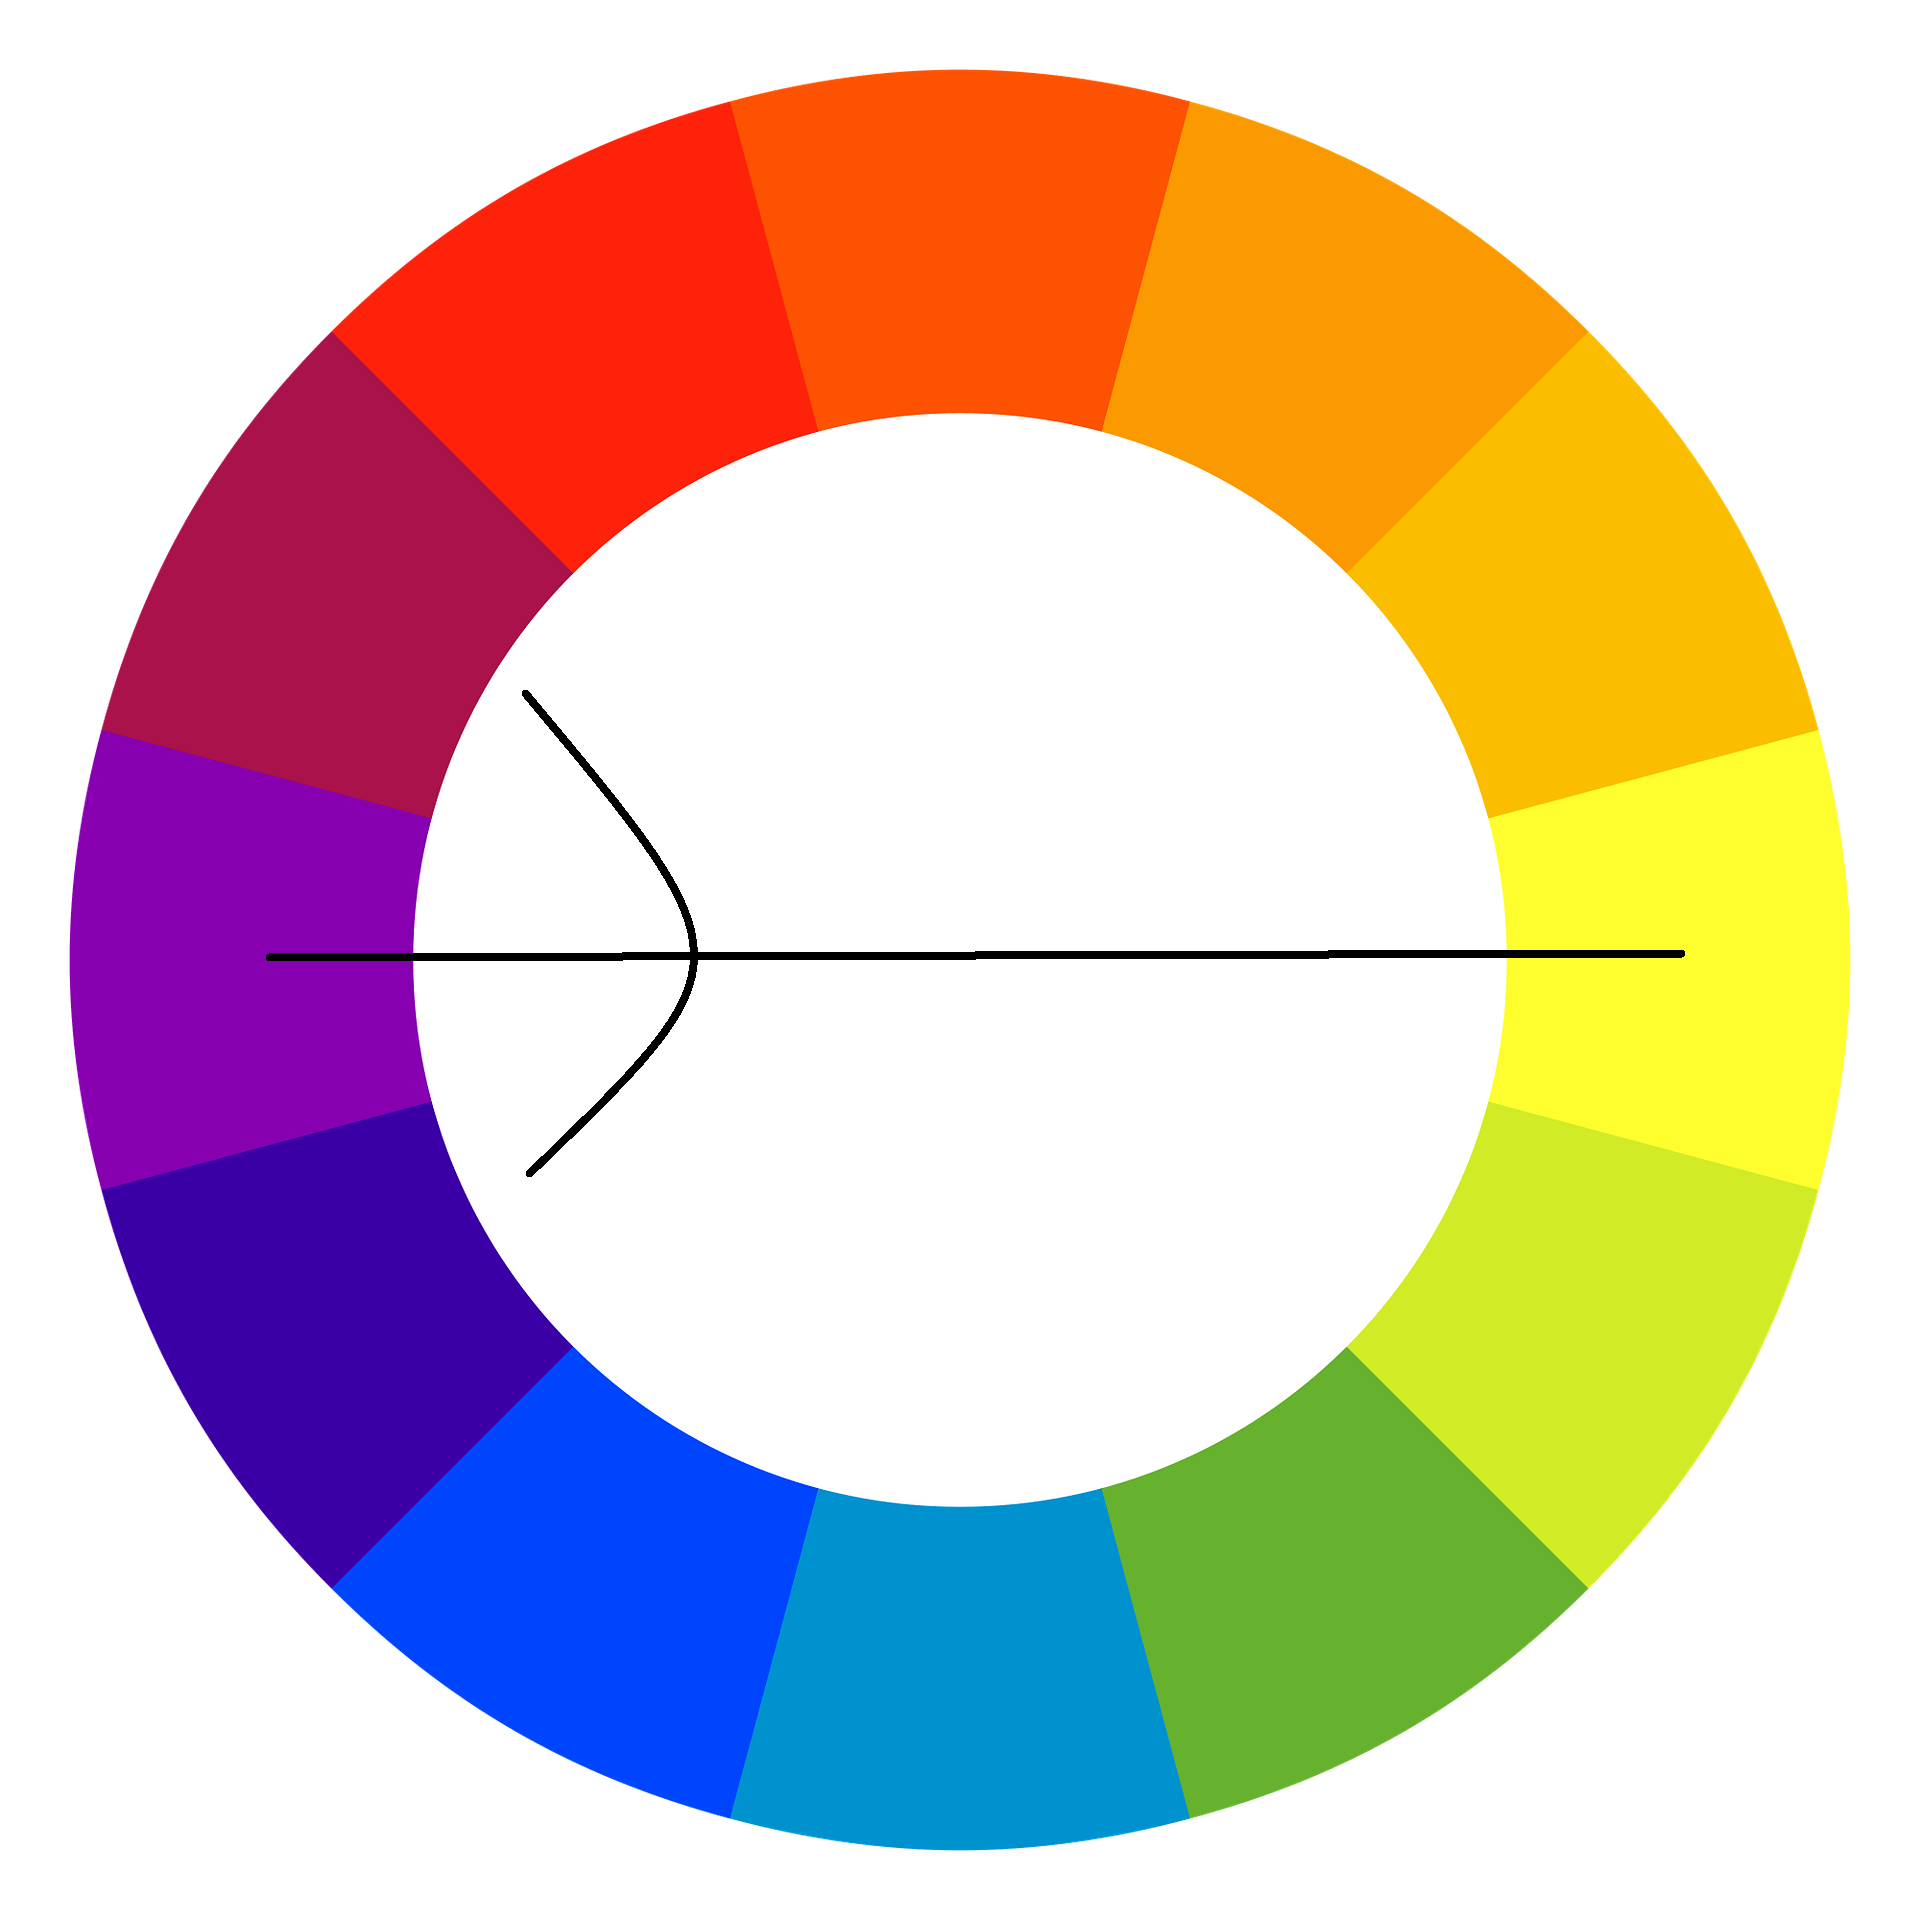 Koło kolorów w marketingu i sprzedaży - reguła trzech kolorów